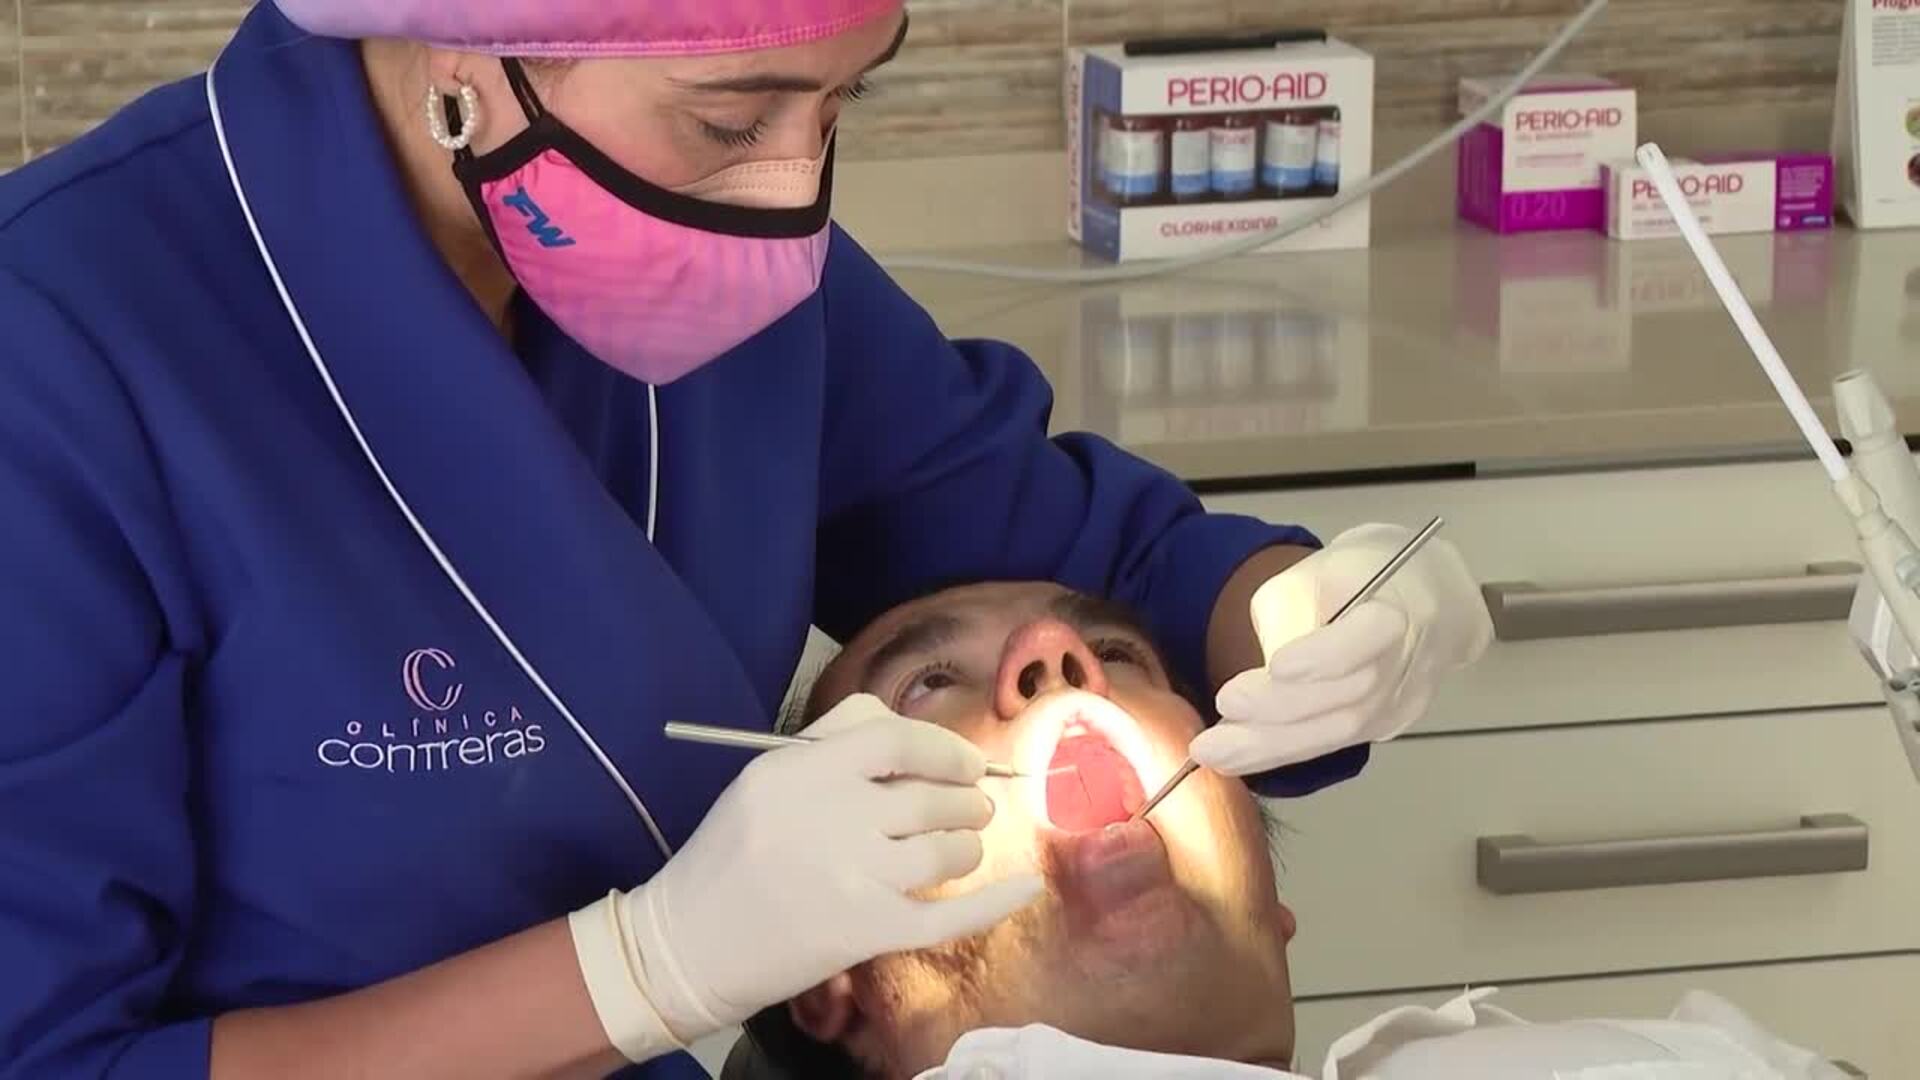 Surge Promosalud, un proyecto para impulsar la salud desde la consulta dental